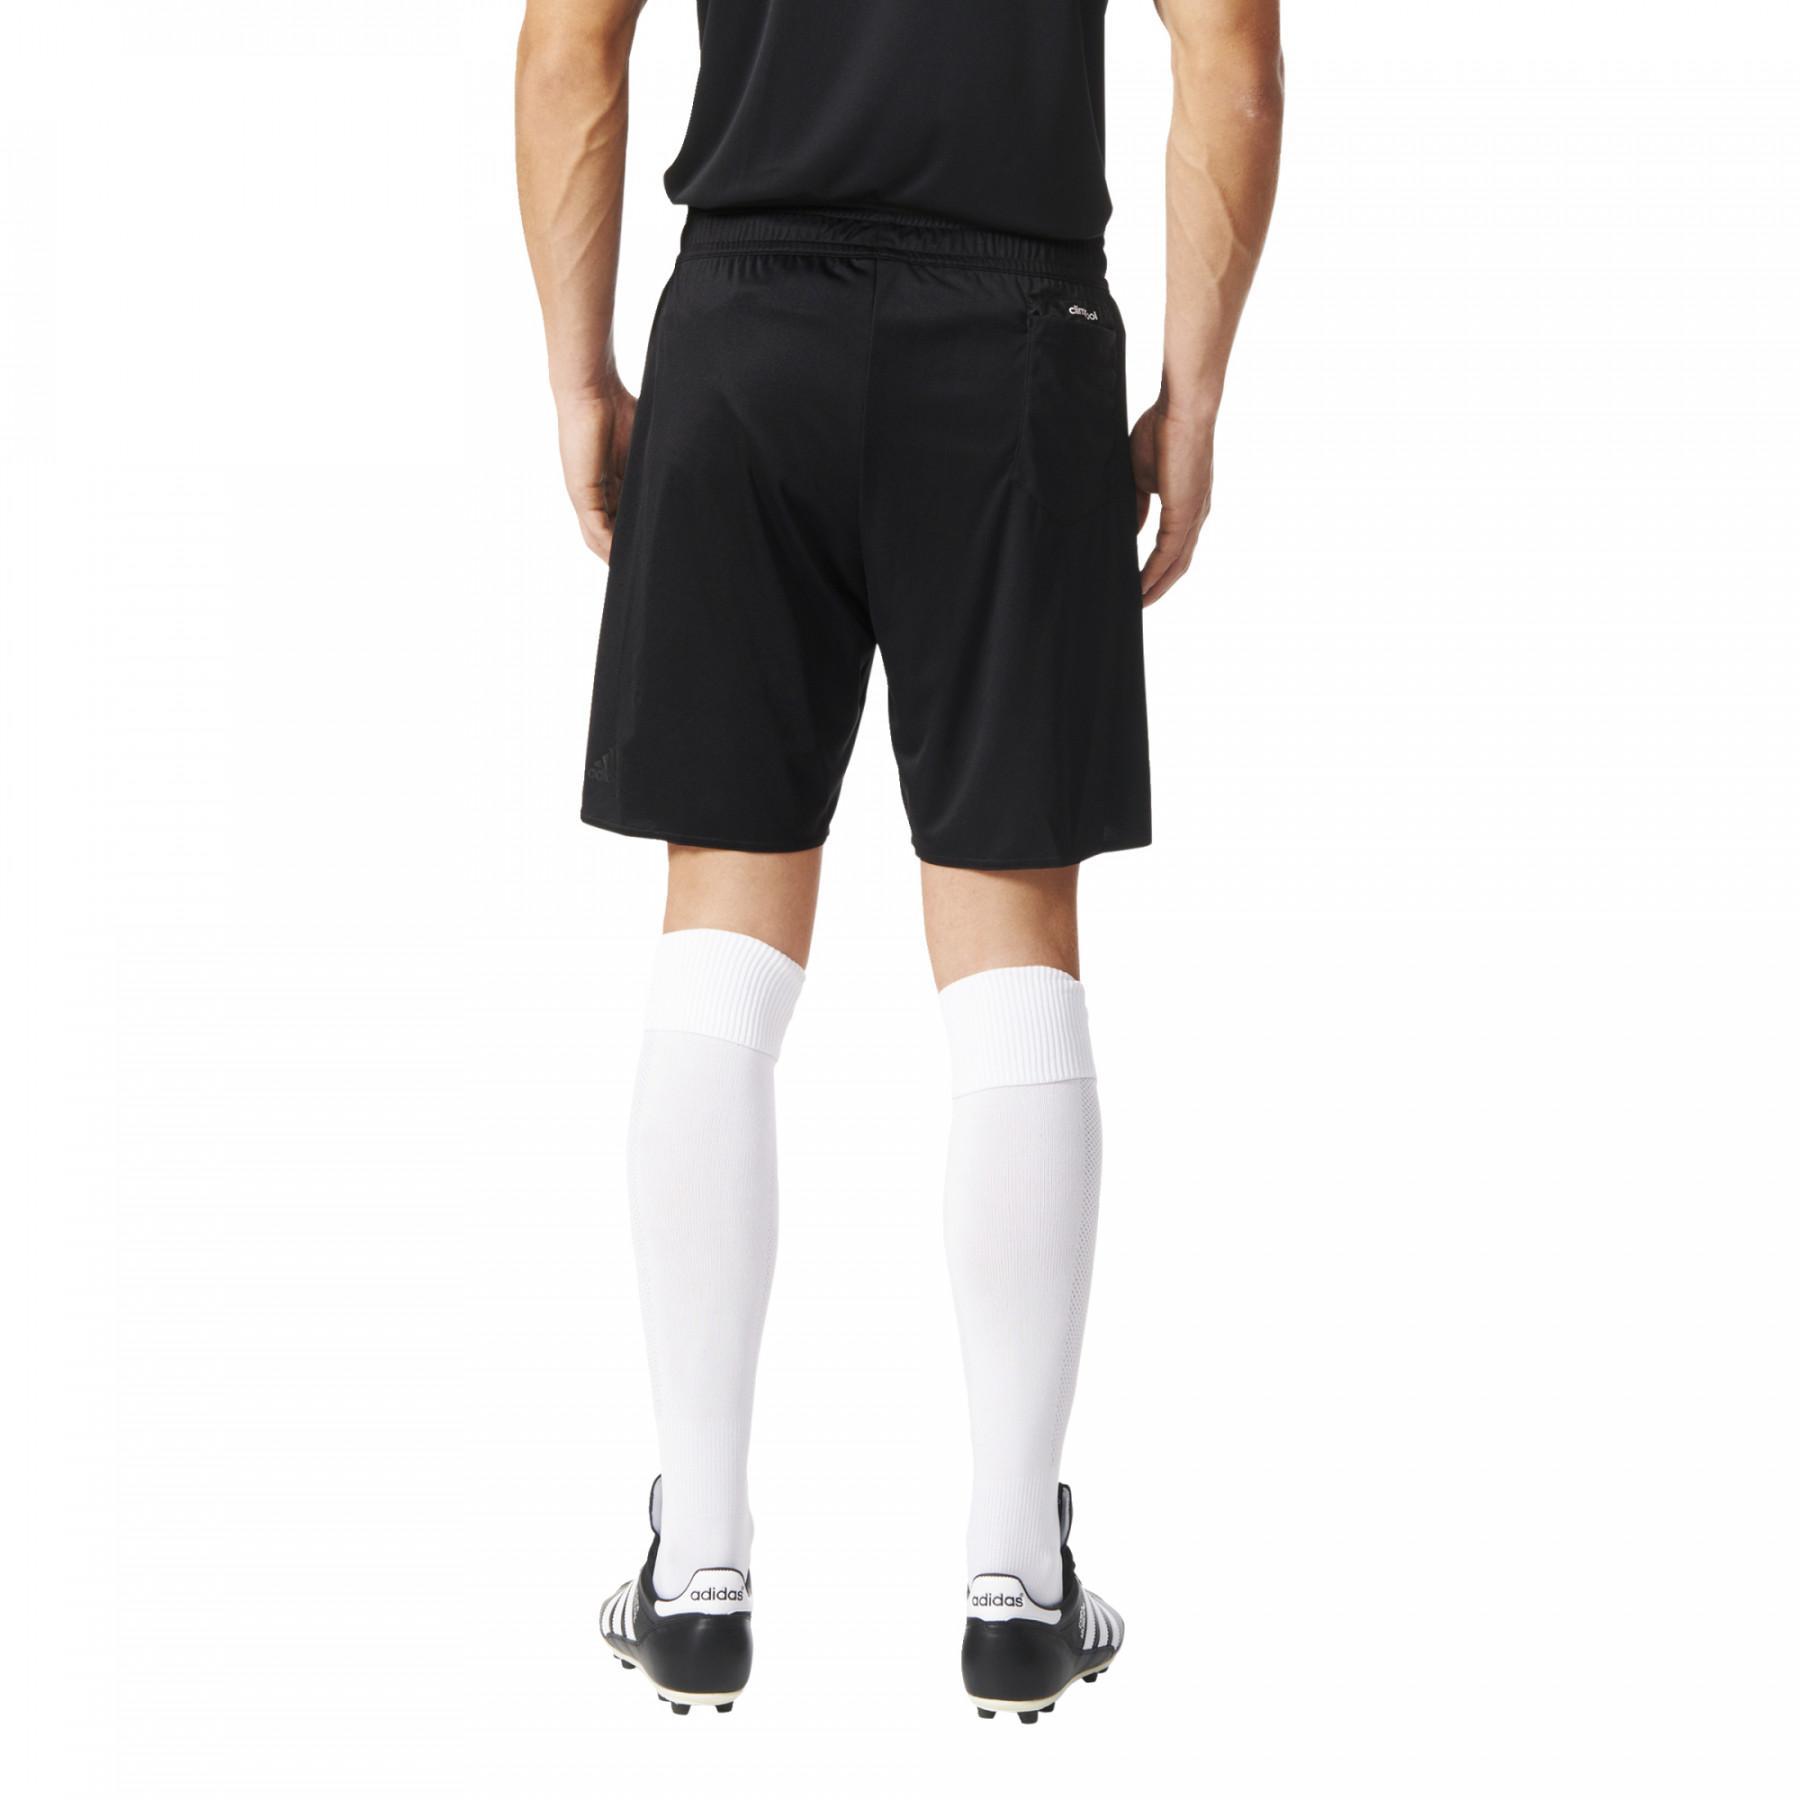 Pantalones cortos de árbitro adidas Referee 16